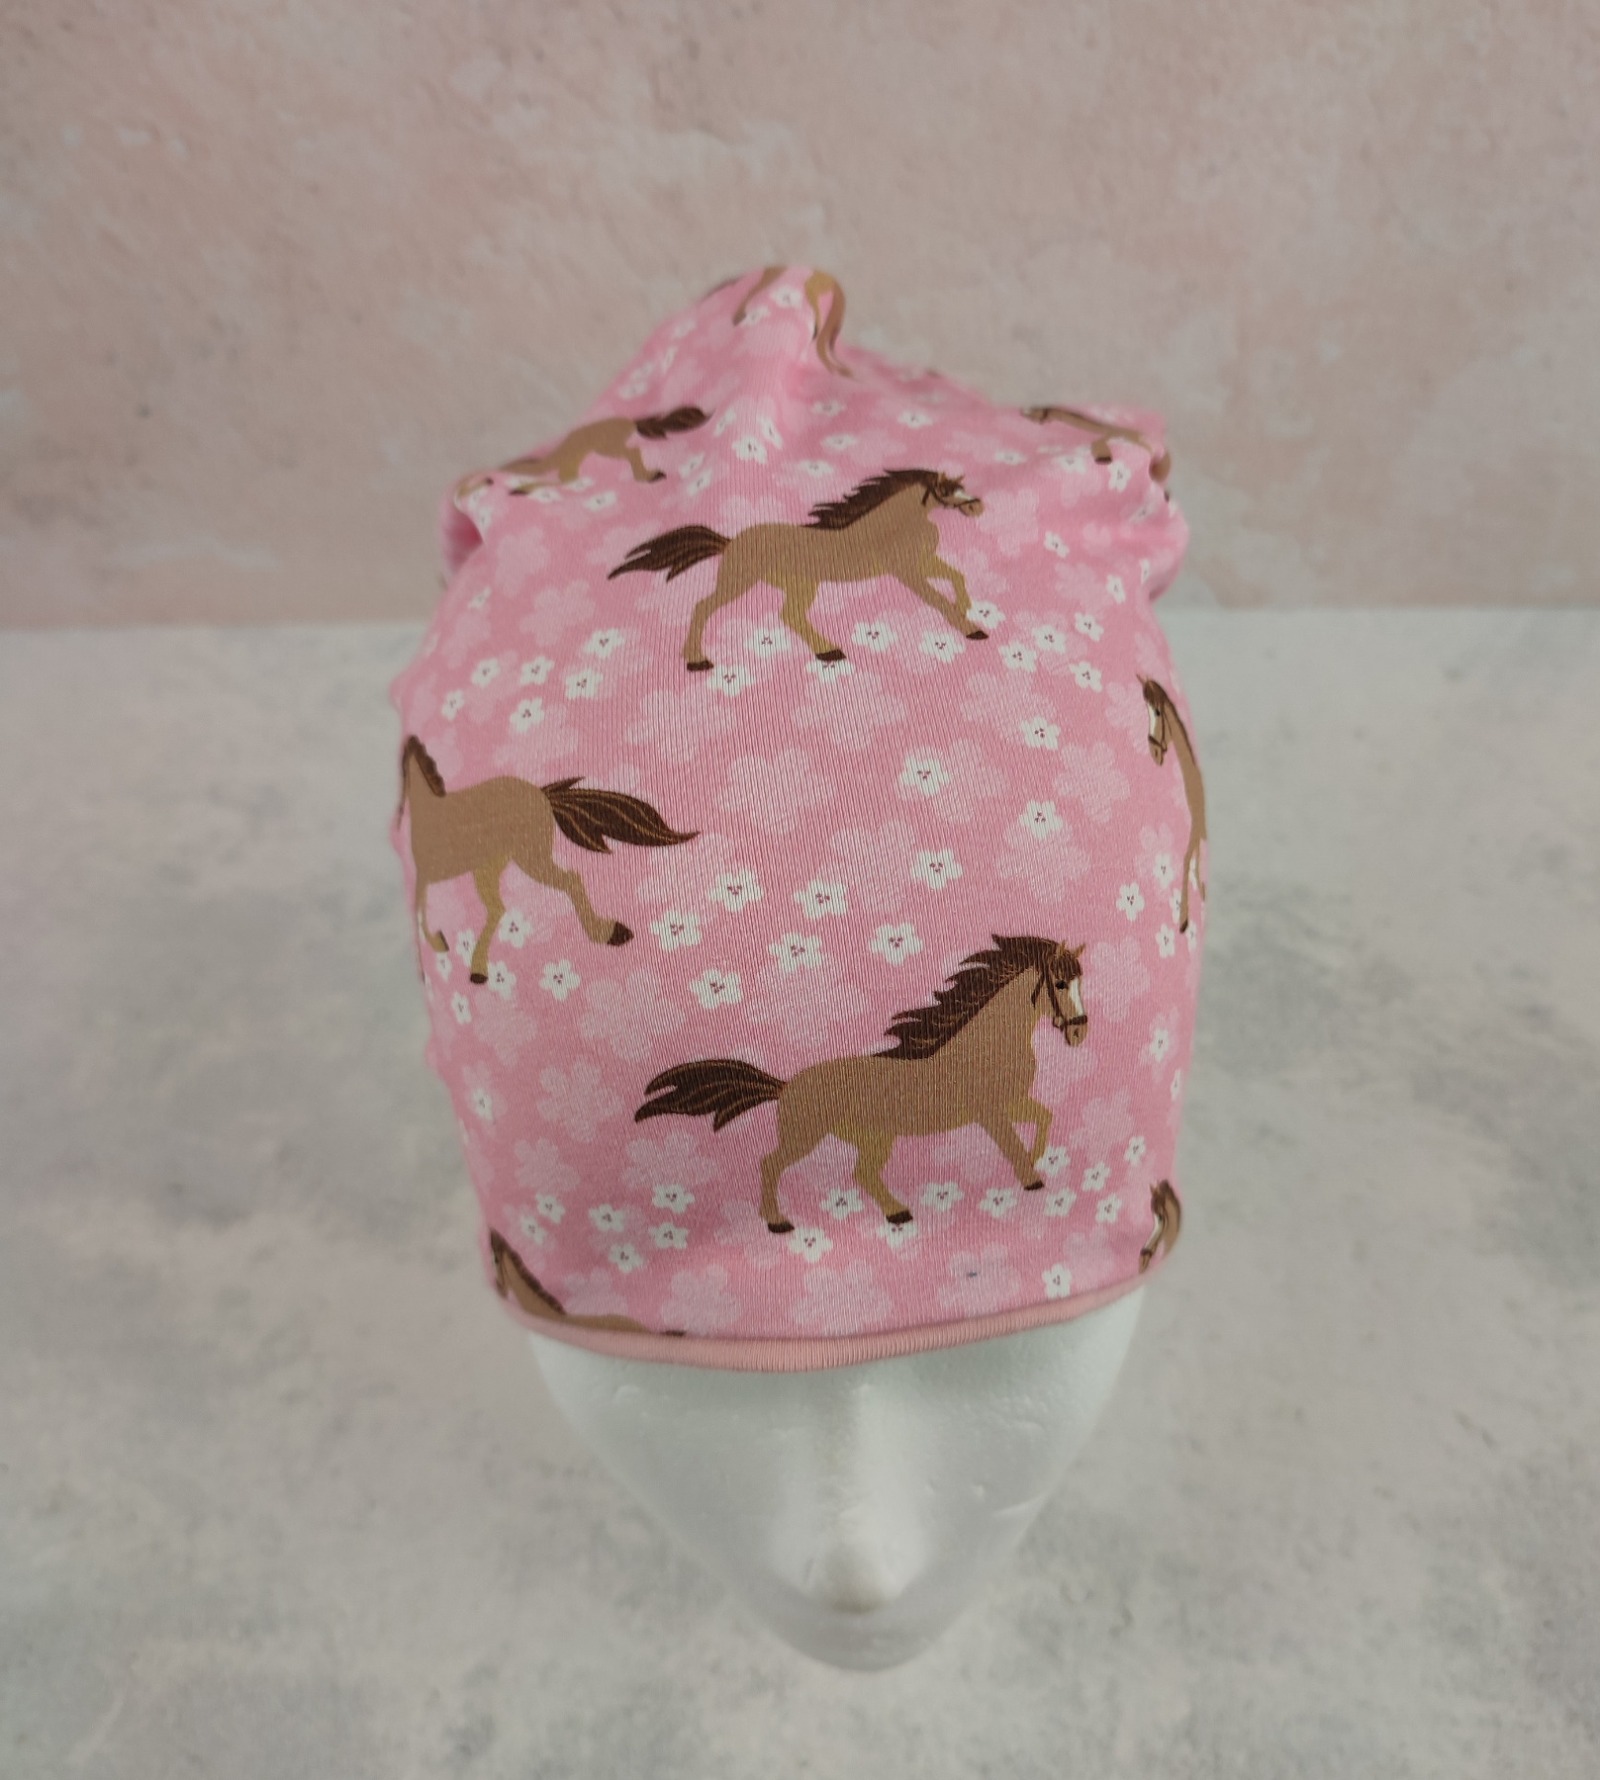 Beanie für kleine Mädchen - Kindermütze aus Jersey in rosa mit Pferden und Blumen Größe ca 44 - 48 cm Kopfumfang 4